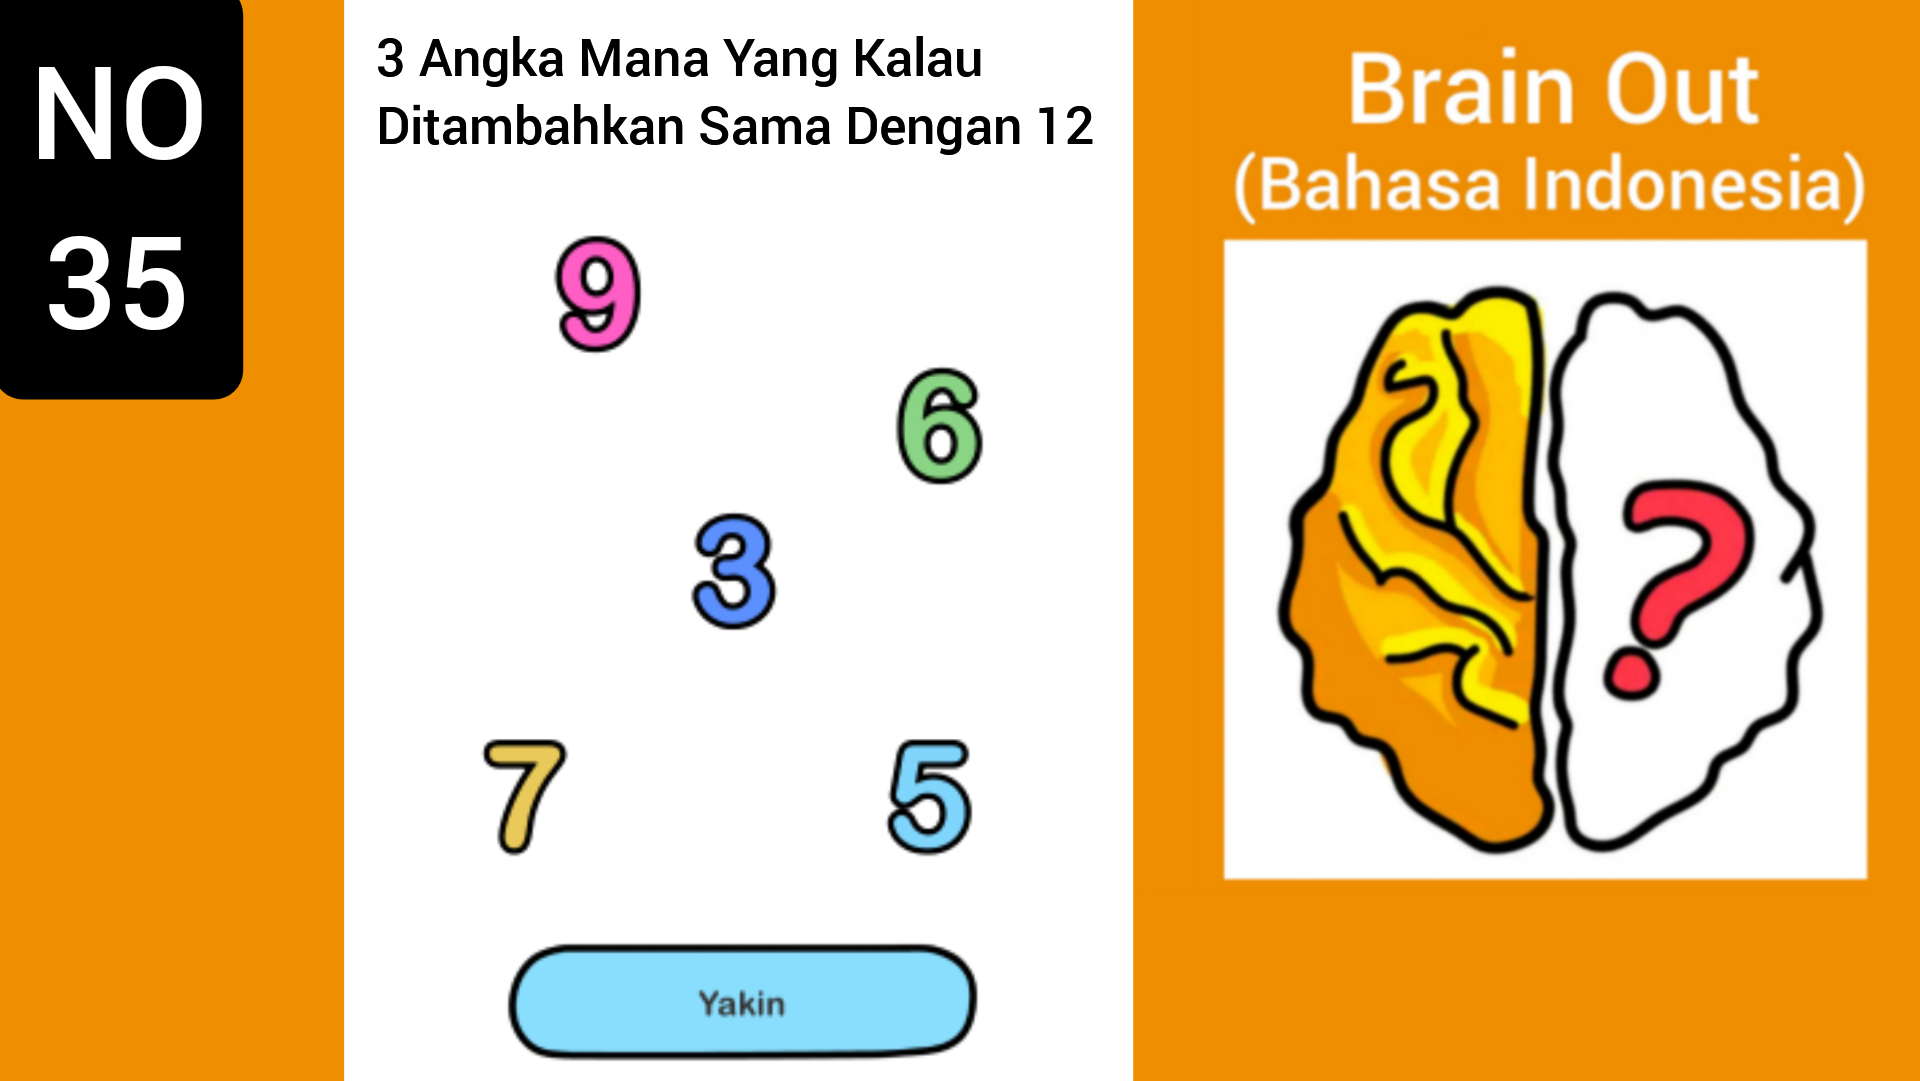 12 brains